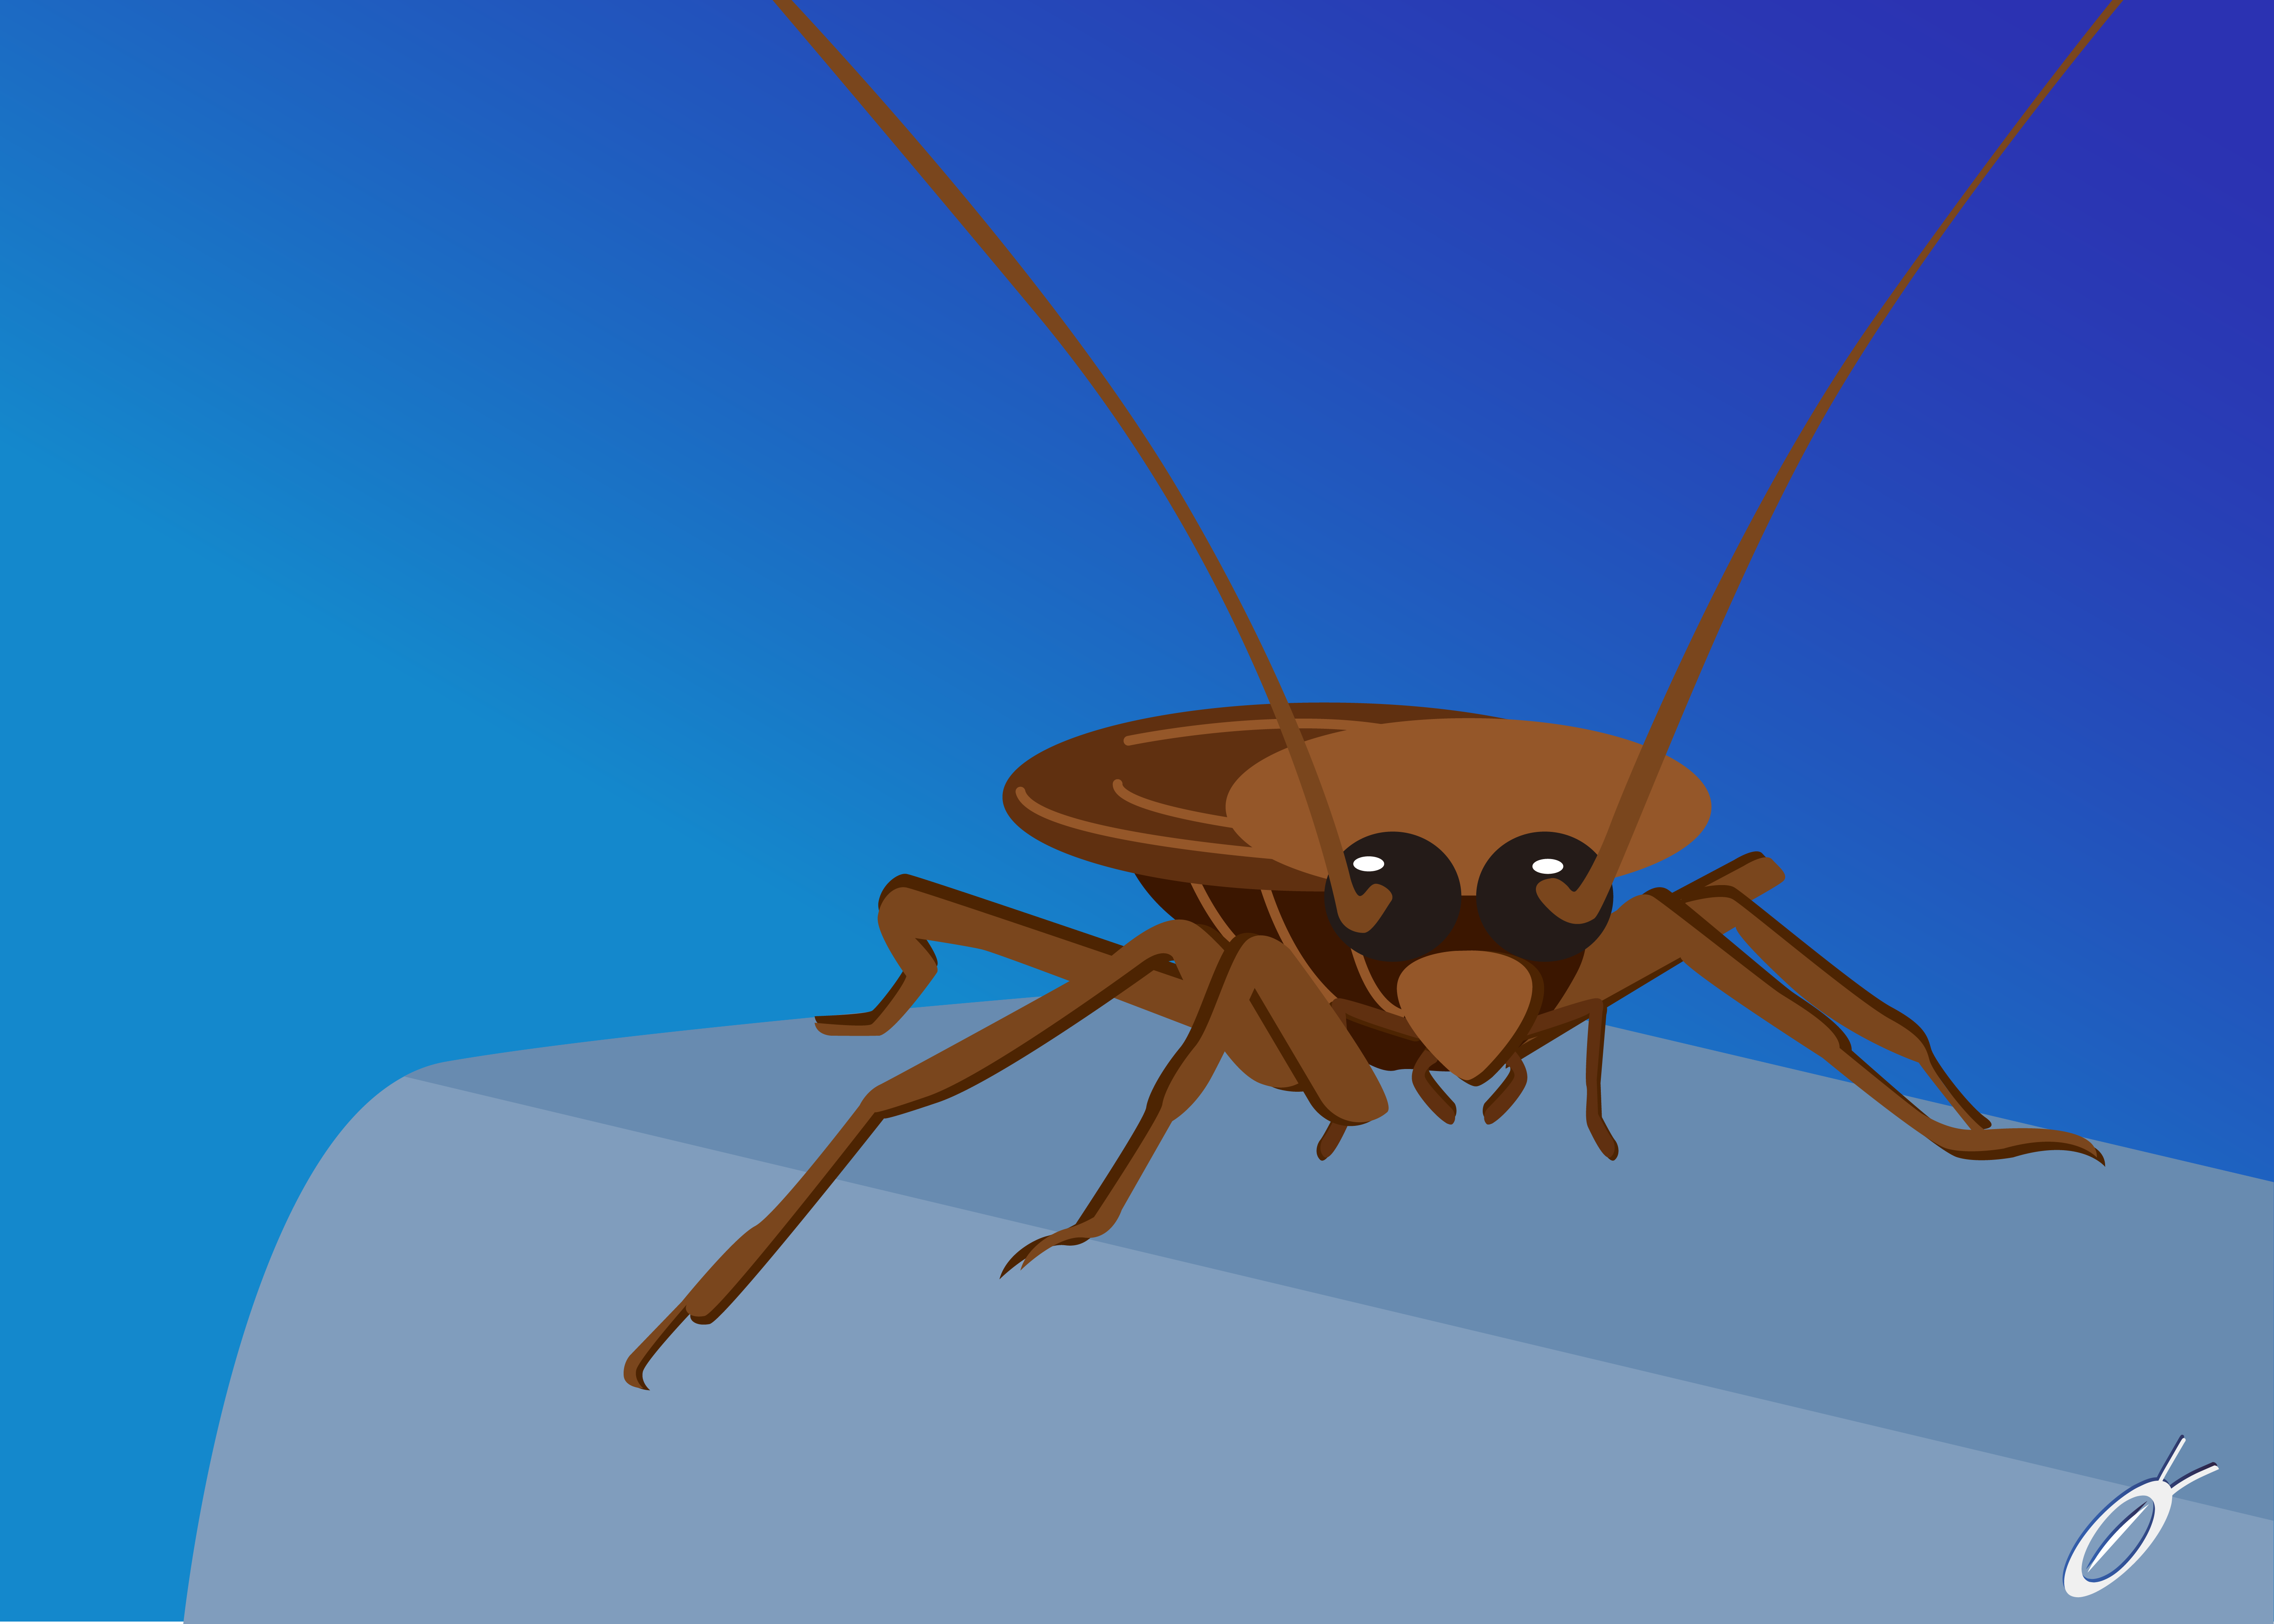 Doctor-cockroach-thailand-the-best-กำจัดแมลงสาบ-อันดับหนึ่ง-ในไทย-ด้วยน้ำยาสมุนไพร